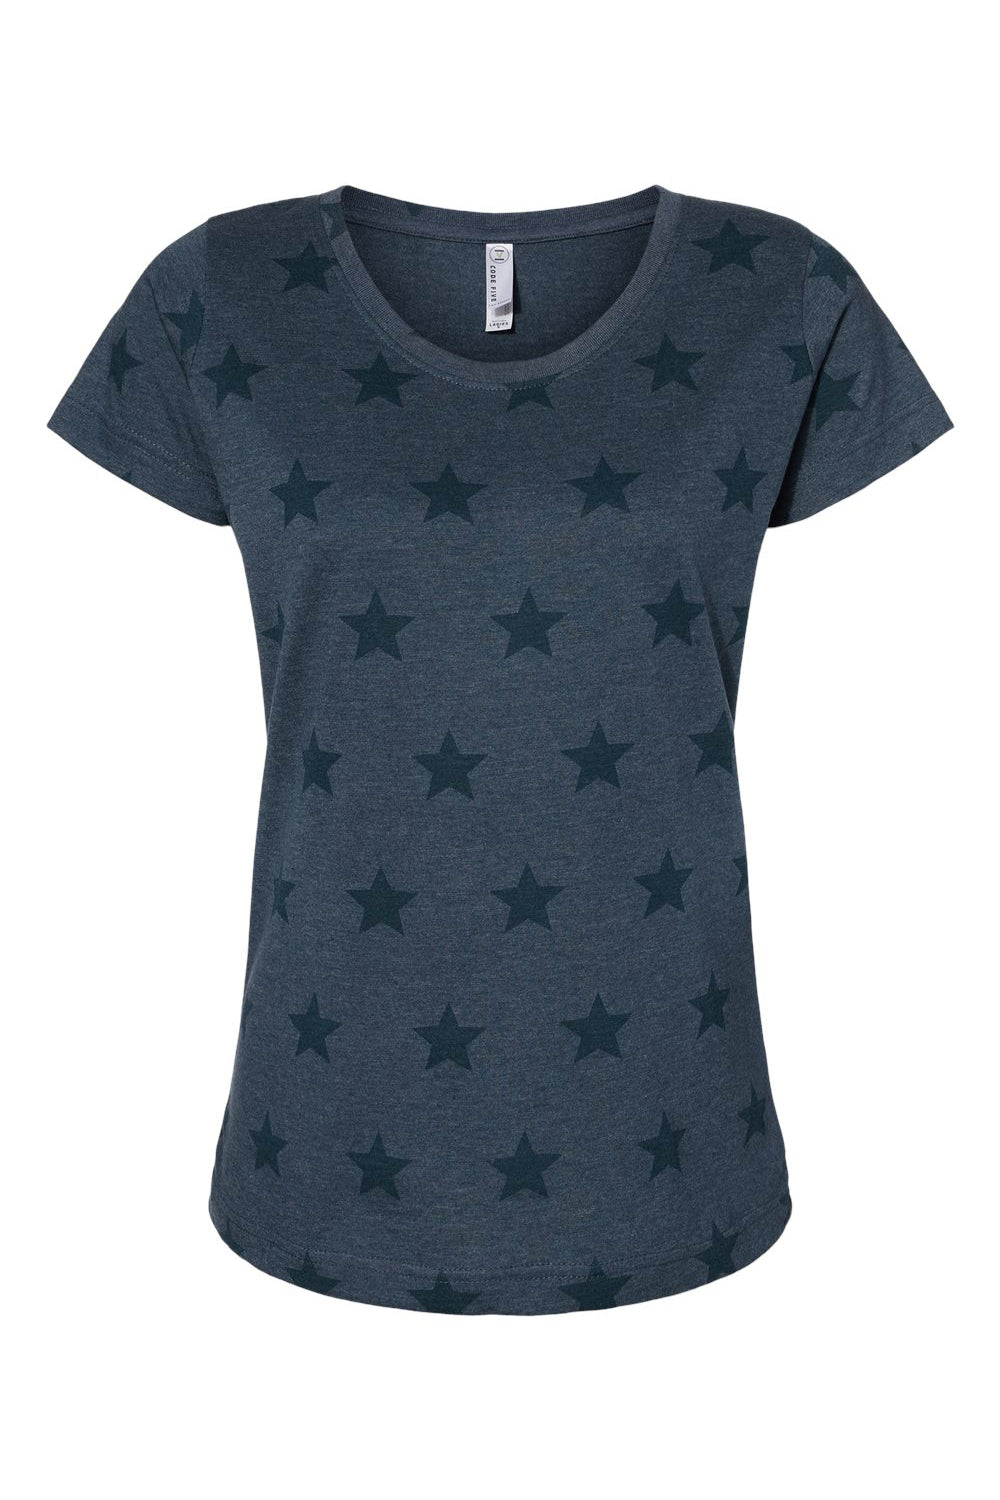 Code Five 3629 Womens Star Print Short Sleeve Scoop Neck T-Shirt Denim Blue Flat Front